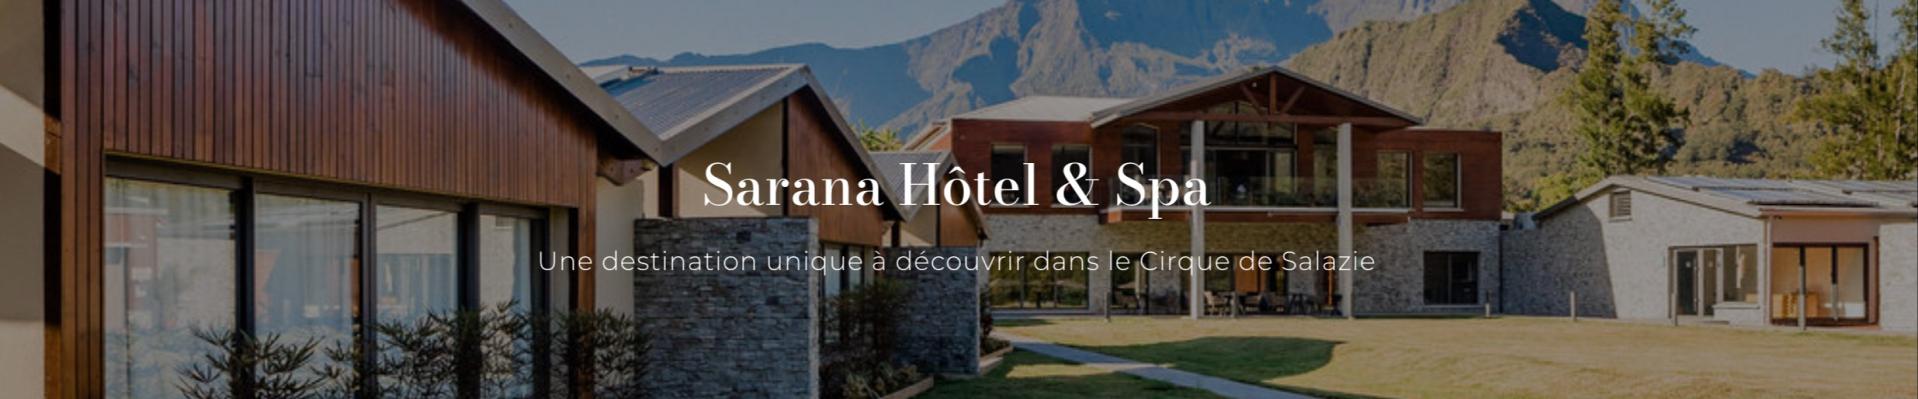 Sarana Hotel & Spa